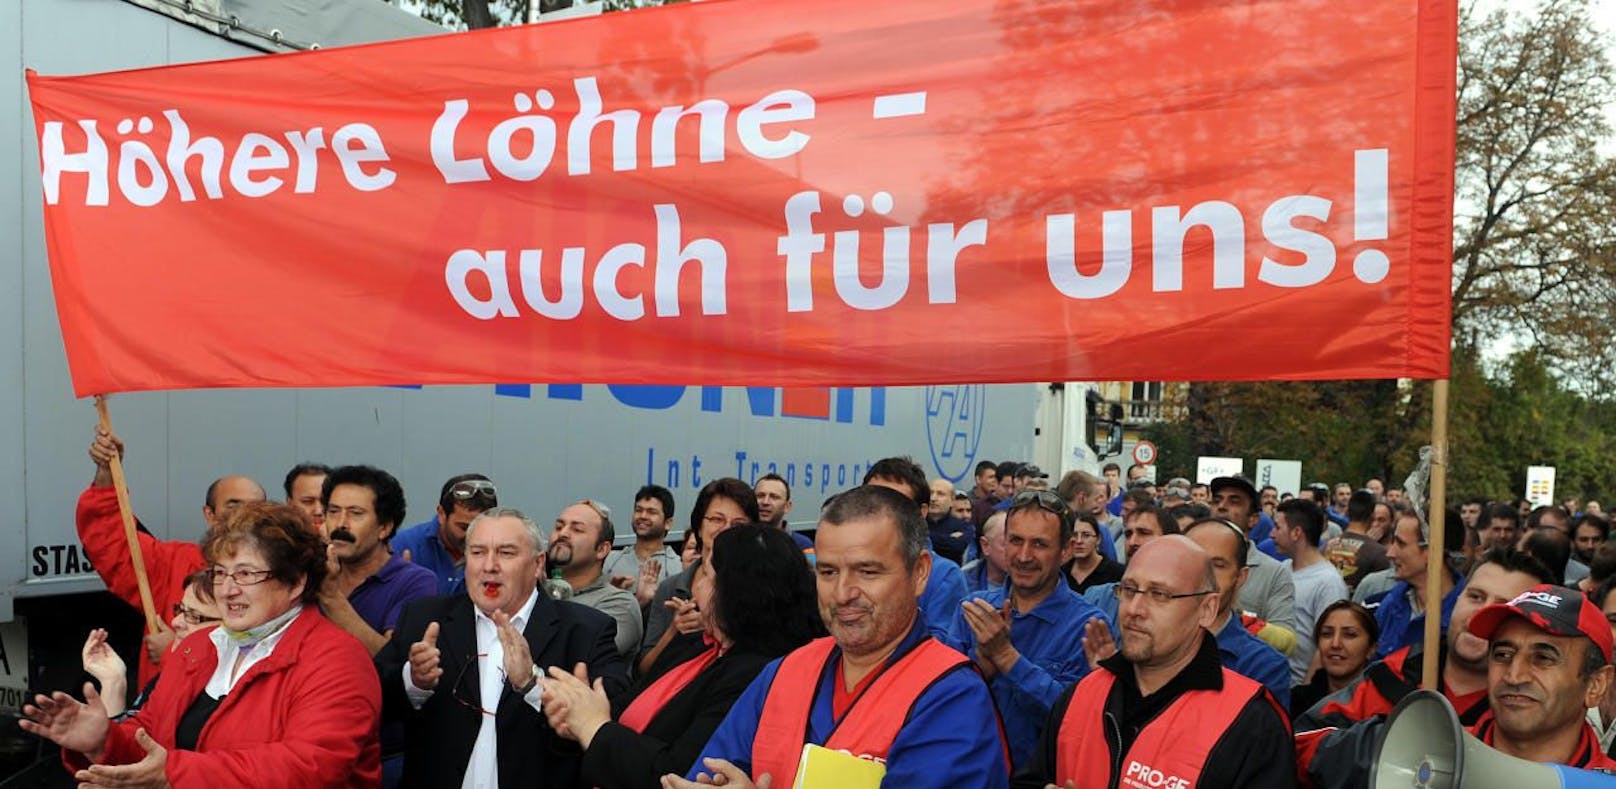 Nach den gescheiterten Verhandlungen über neue Kollektivverträge kündigt die Gewerkschaft Betriebsversammlungen an. (Symbolbild) 